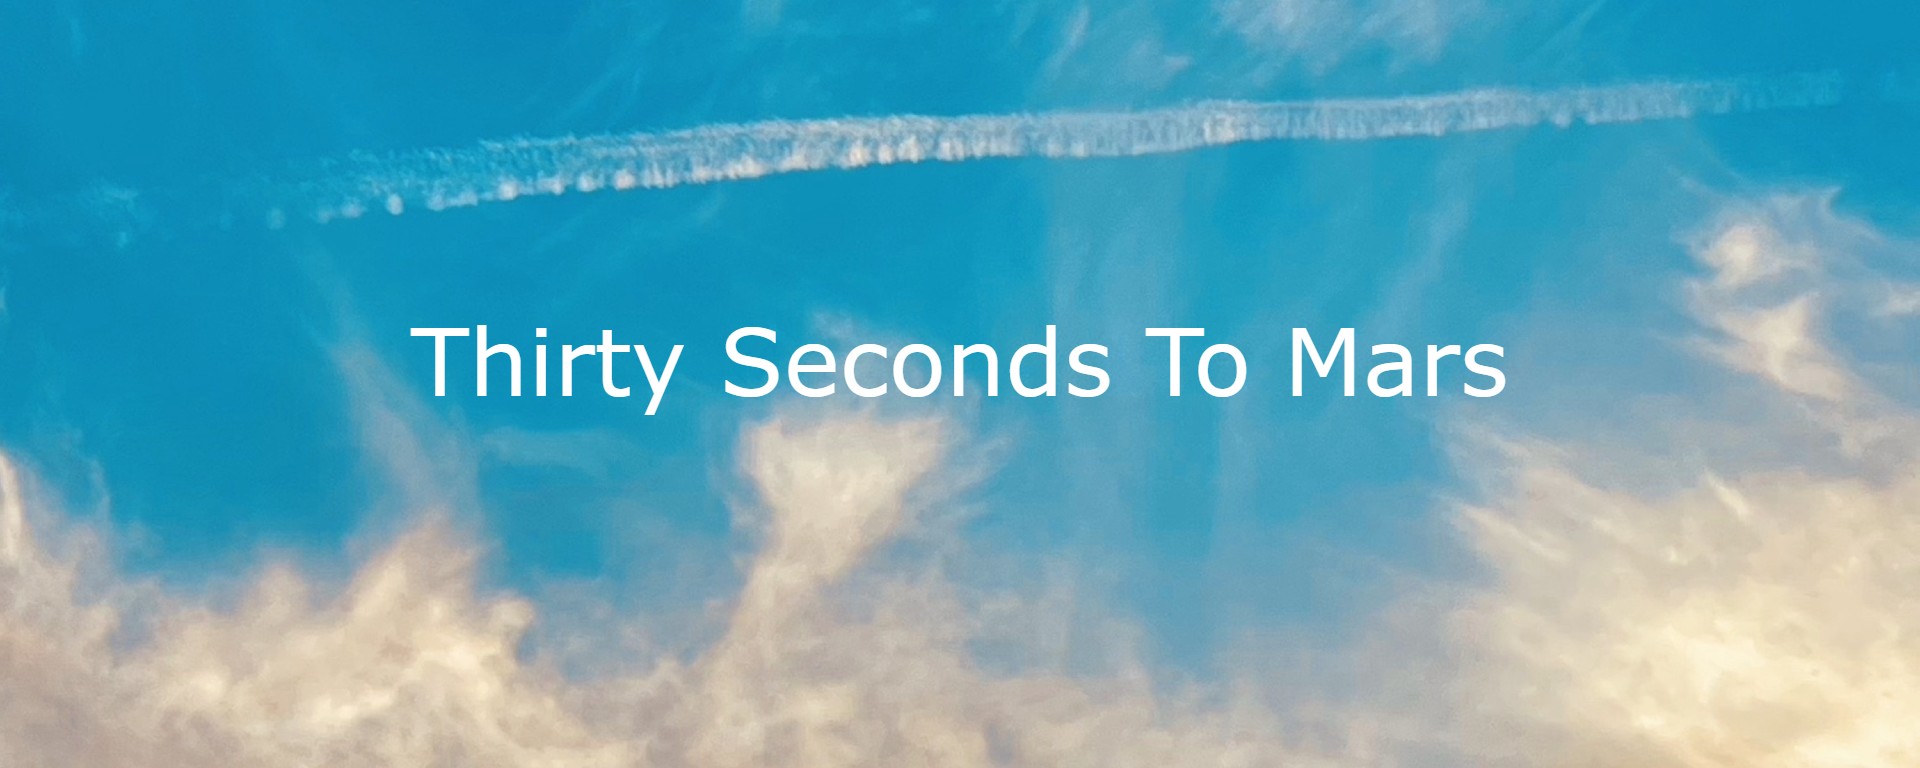 Thirty Seconds To Mars: Šiesty štúdiový album už čoskoro vo vašich ušiach! Vypočujte si track "Seasons".